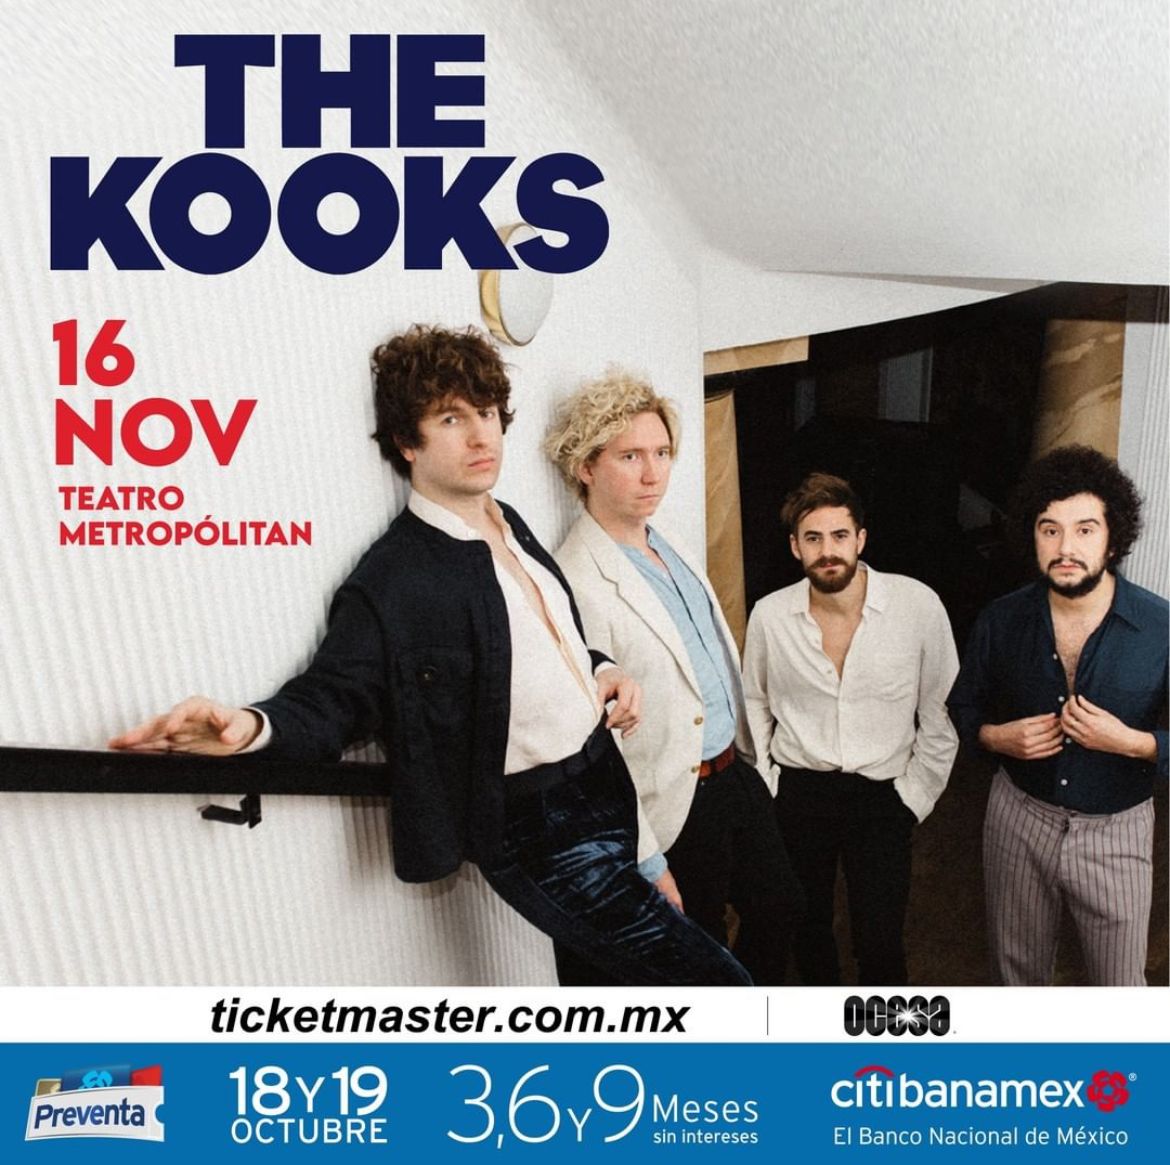 Uno más: The Kooks anuncia concierto en el Teatro Metropólitan de la CDMX